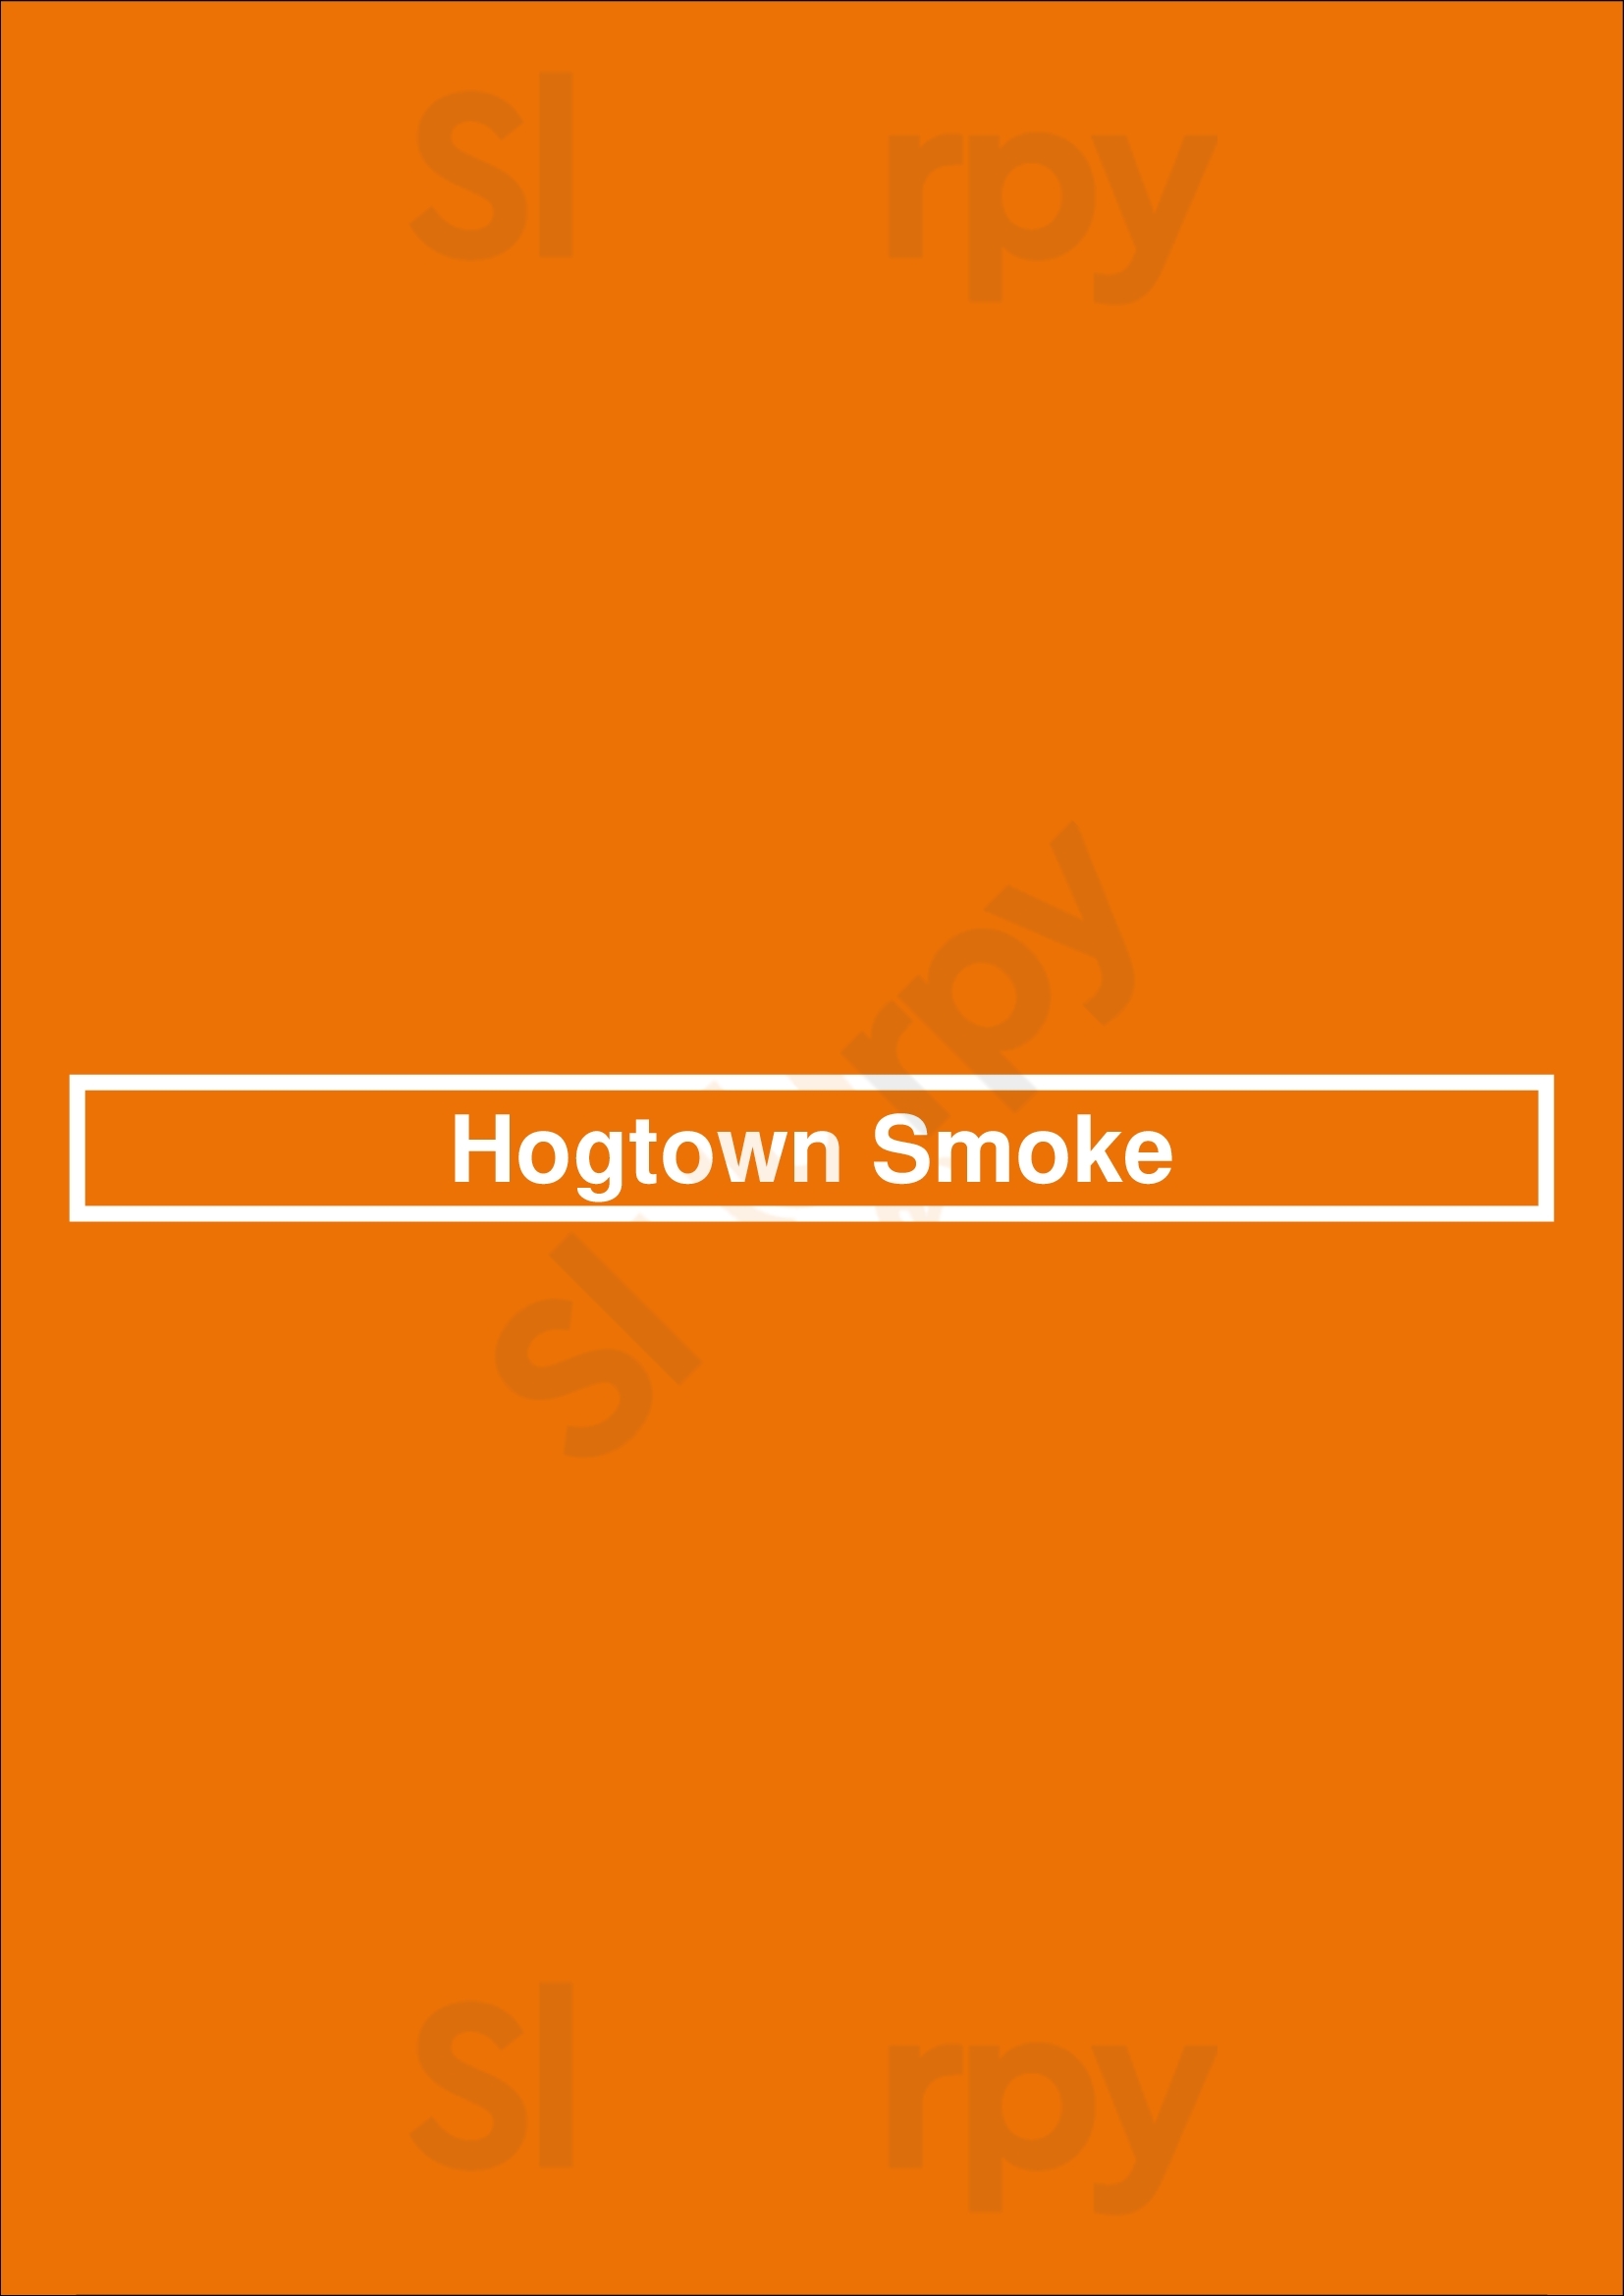 Hogtown Smoke Toronto Menu - 1